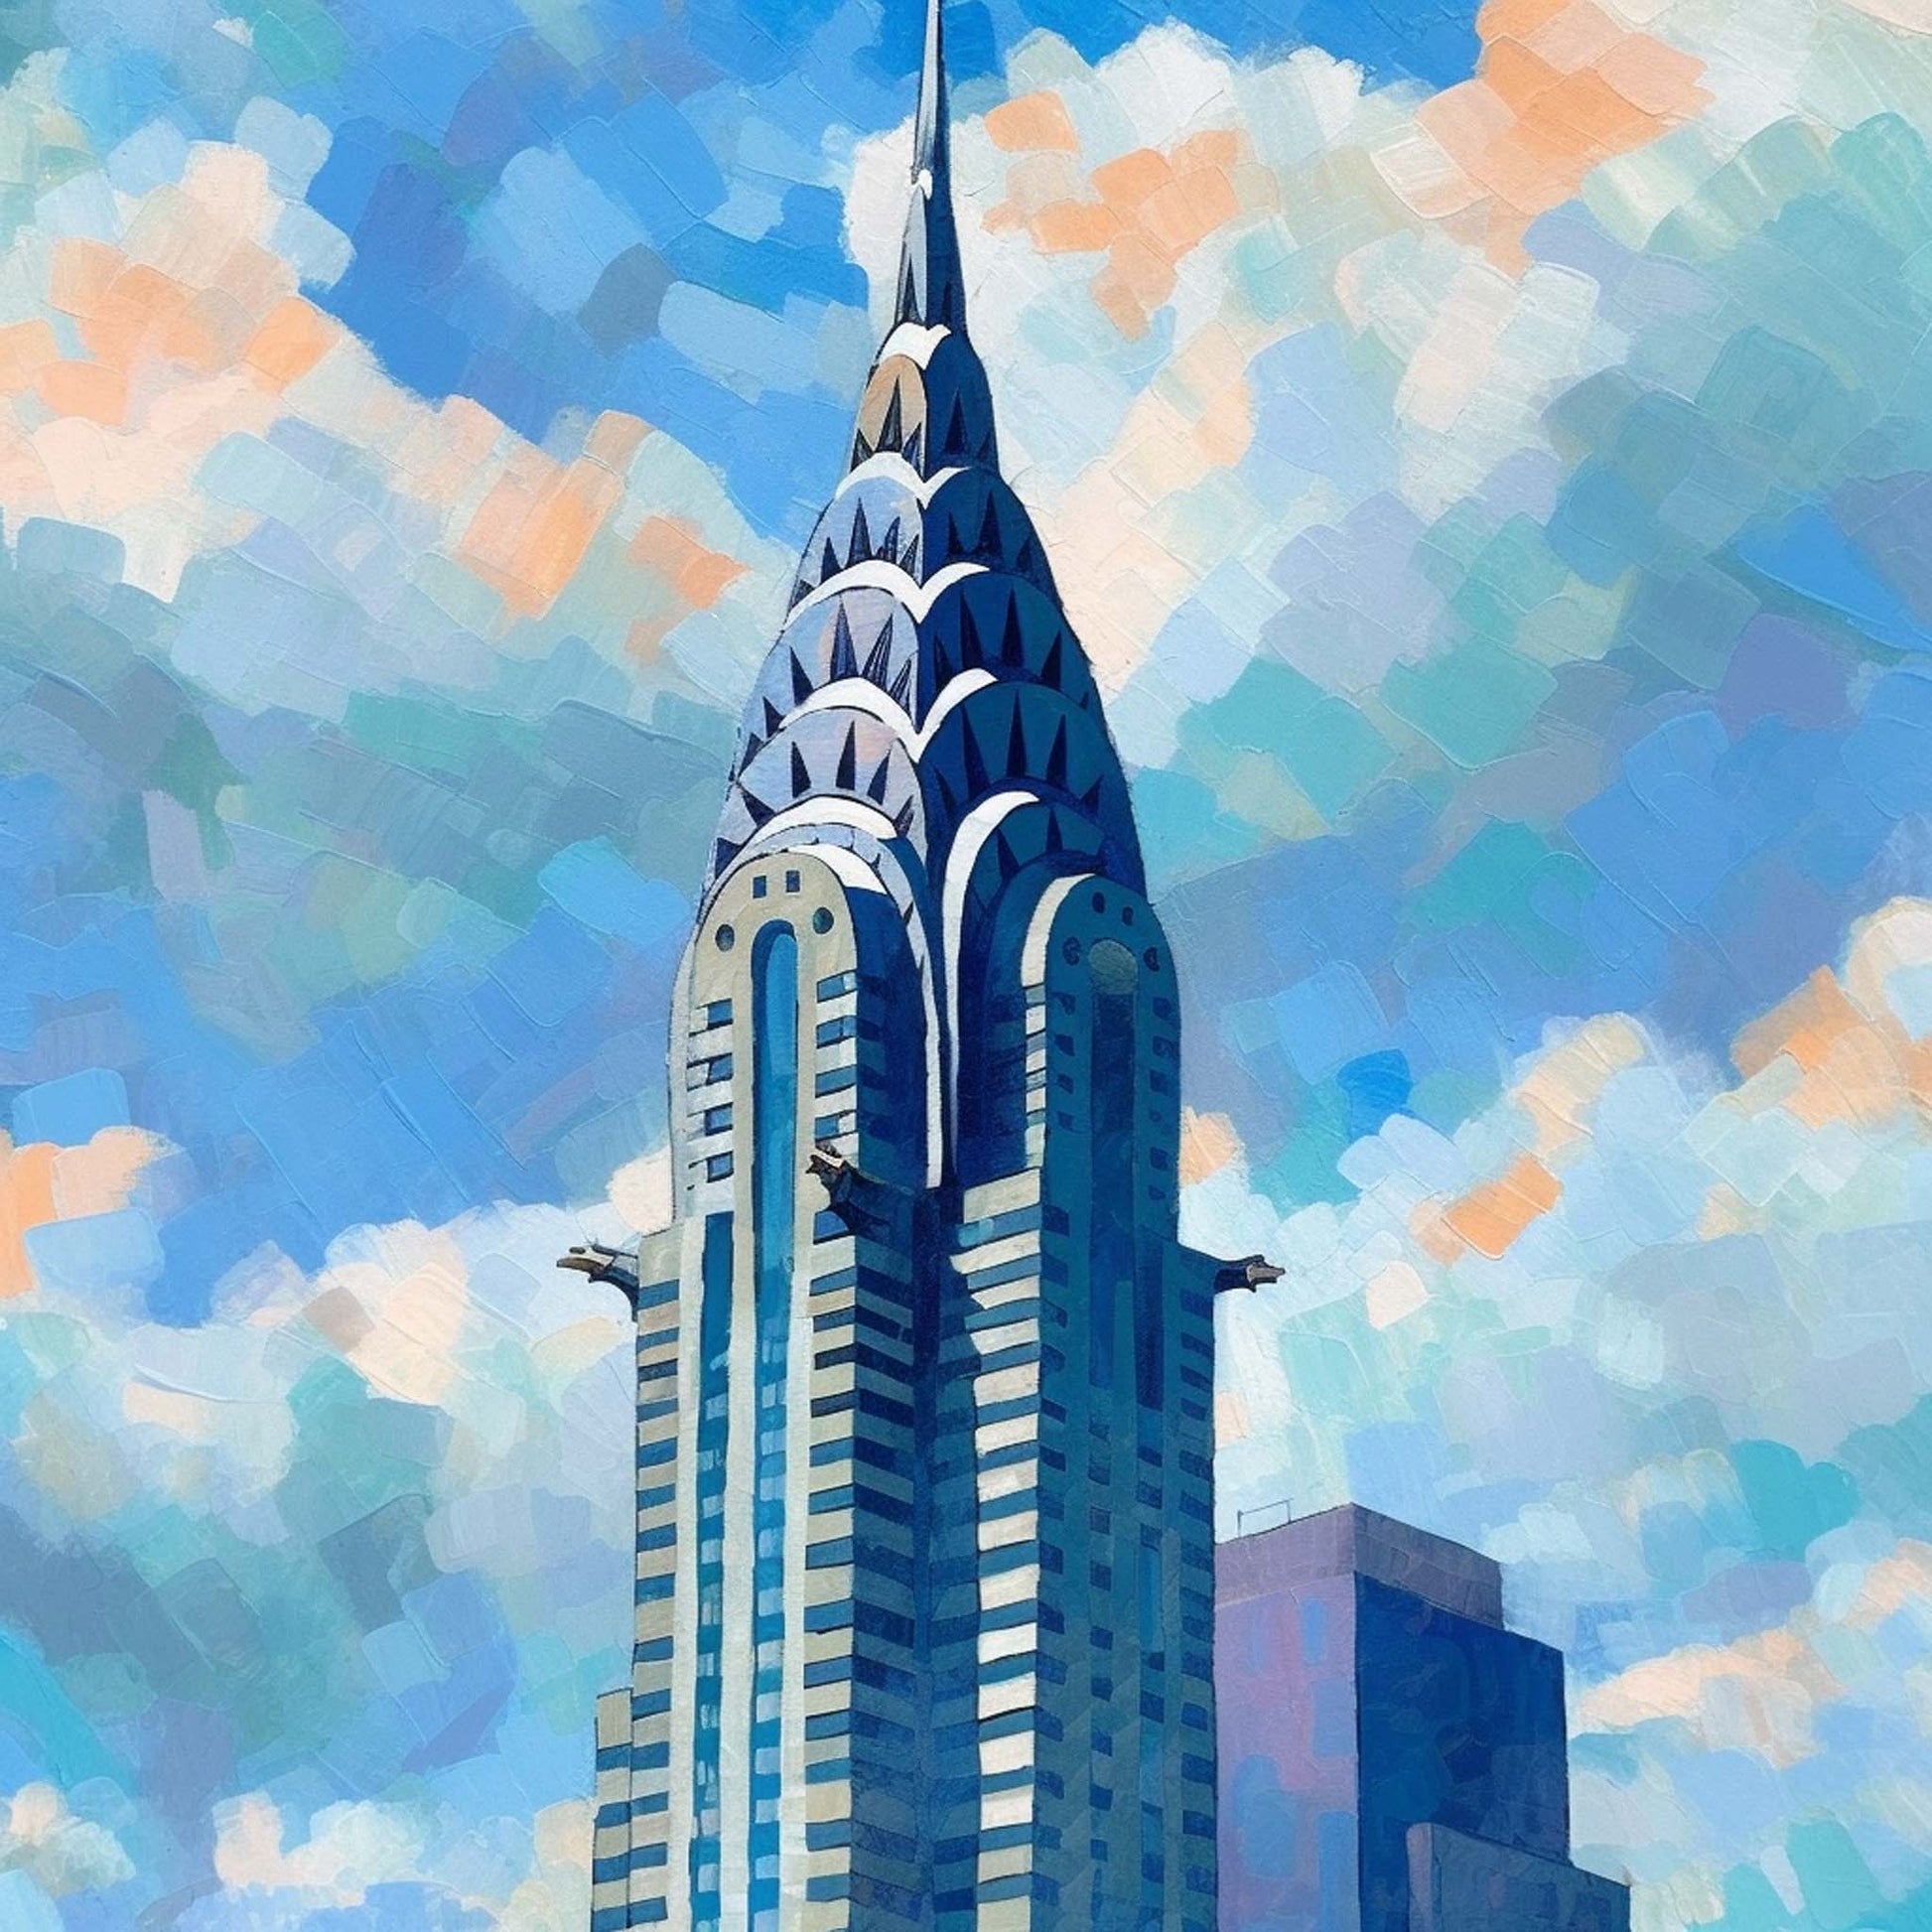 Urbanisto - New York Chrysler Building - Wandbild in der Stilrichtung des Impressionismus